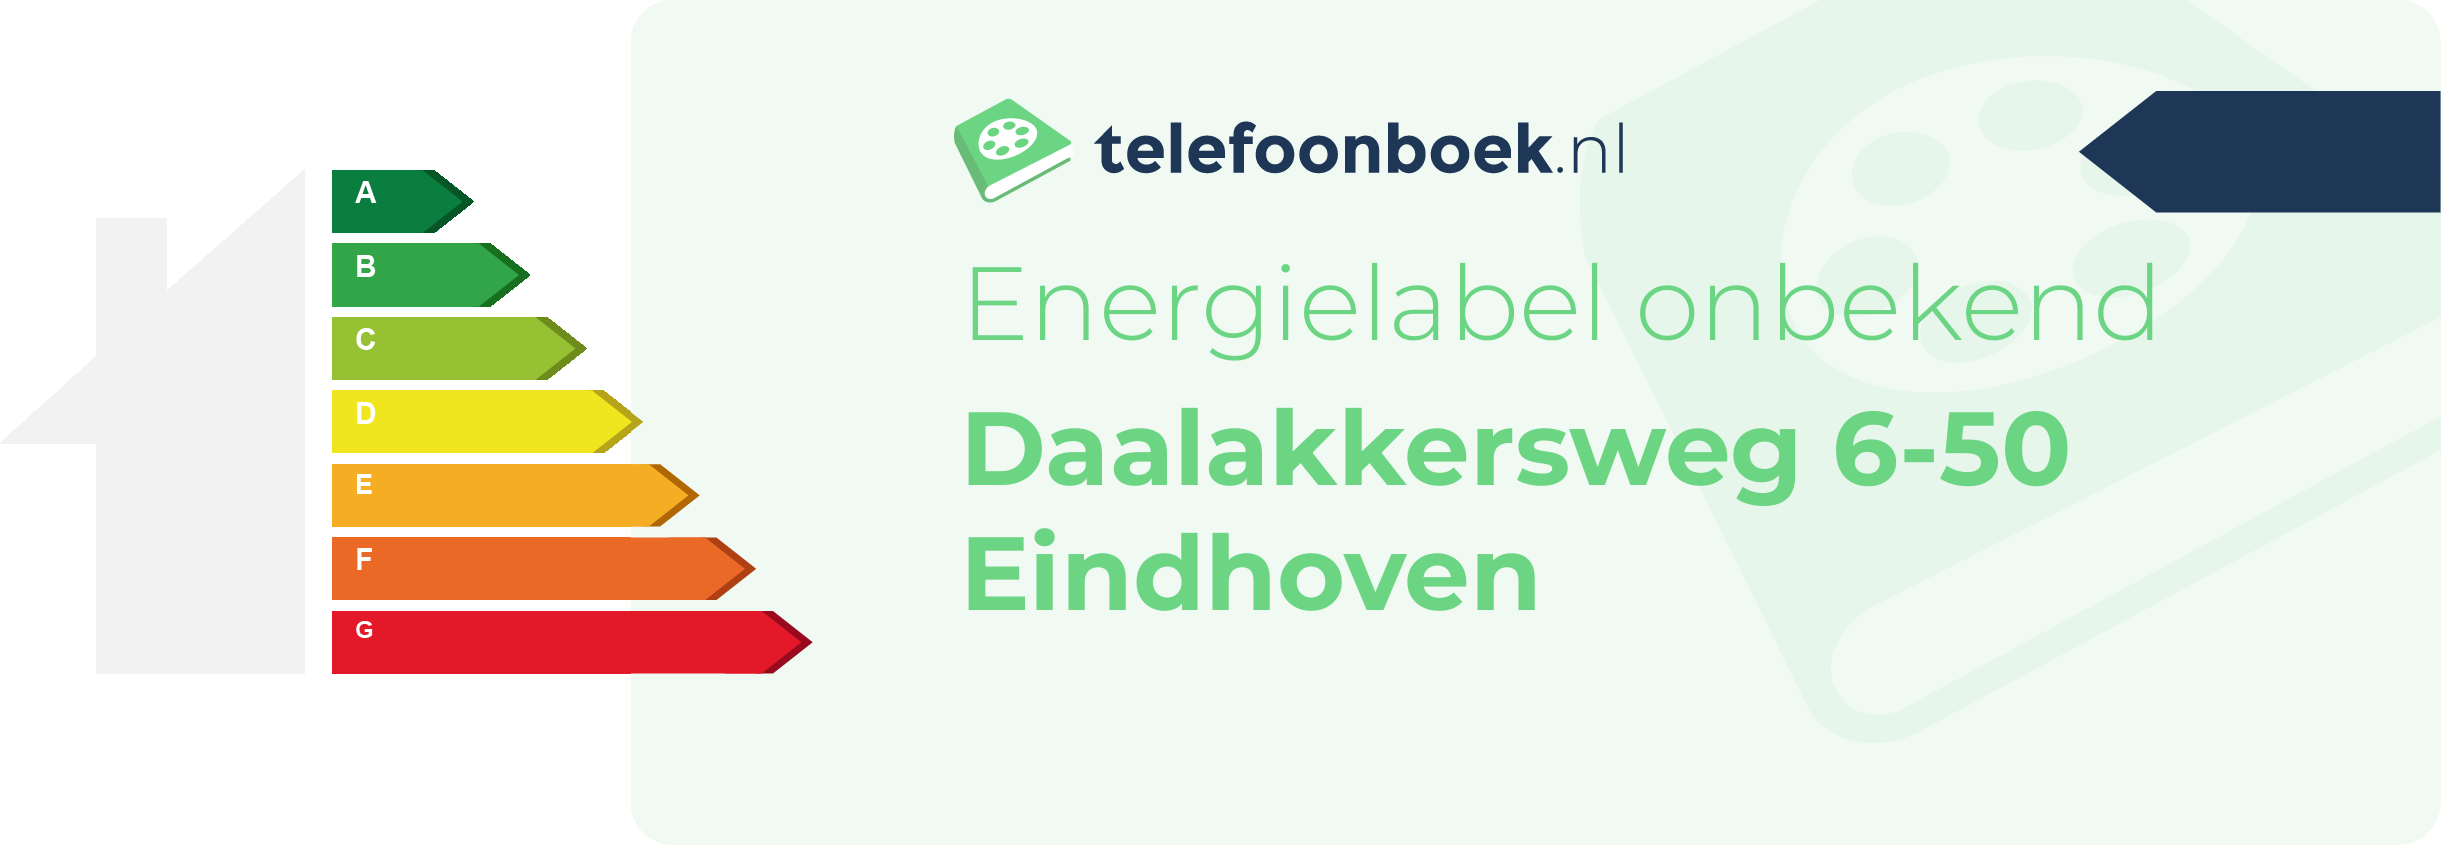 Energielabel Daalakkersweg 6-50 Eindhoven